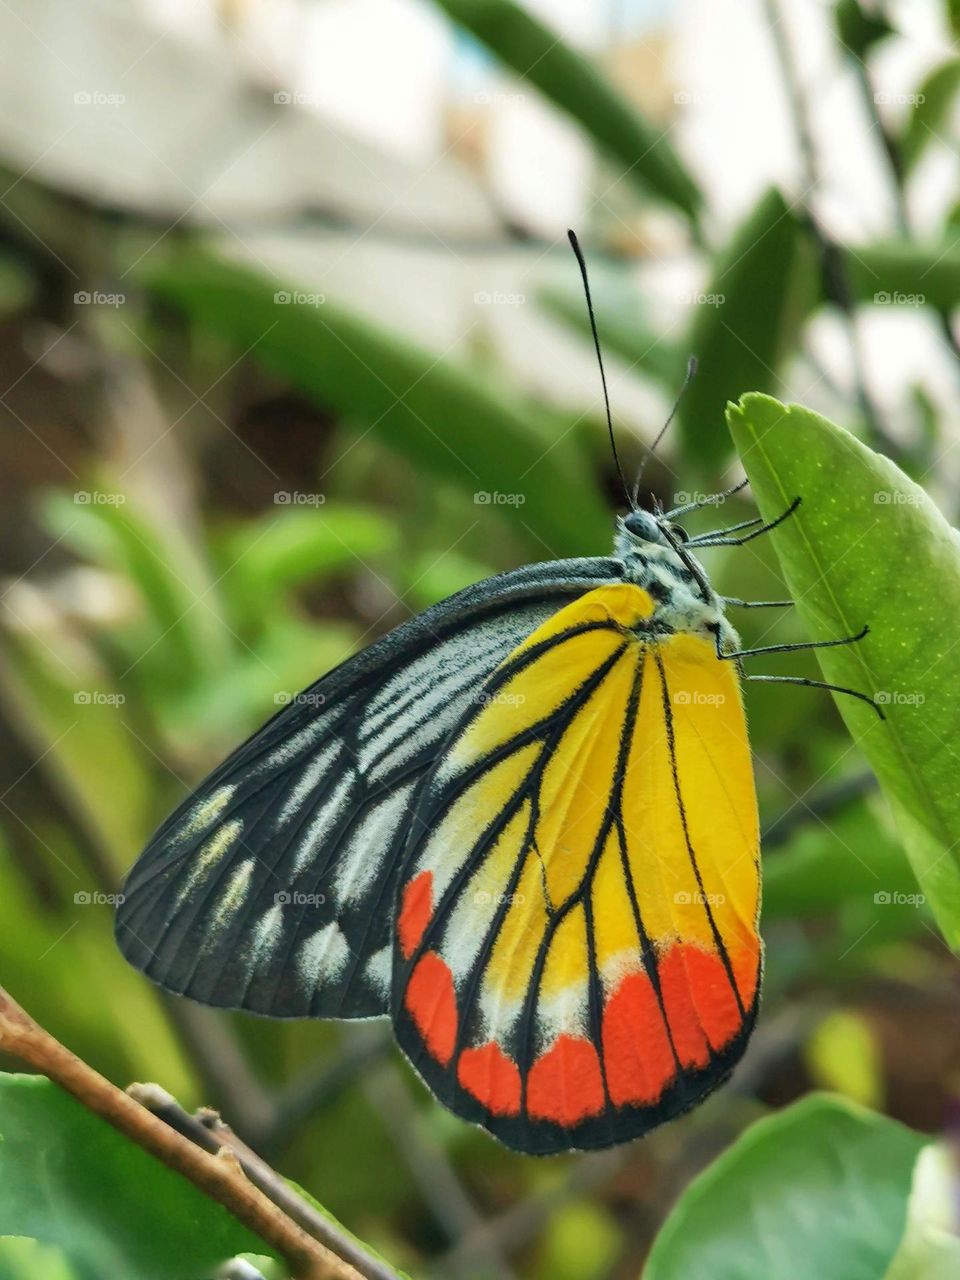 Butterfly : nature # garden 